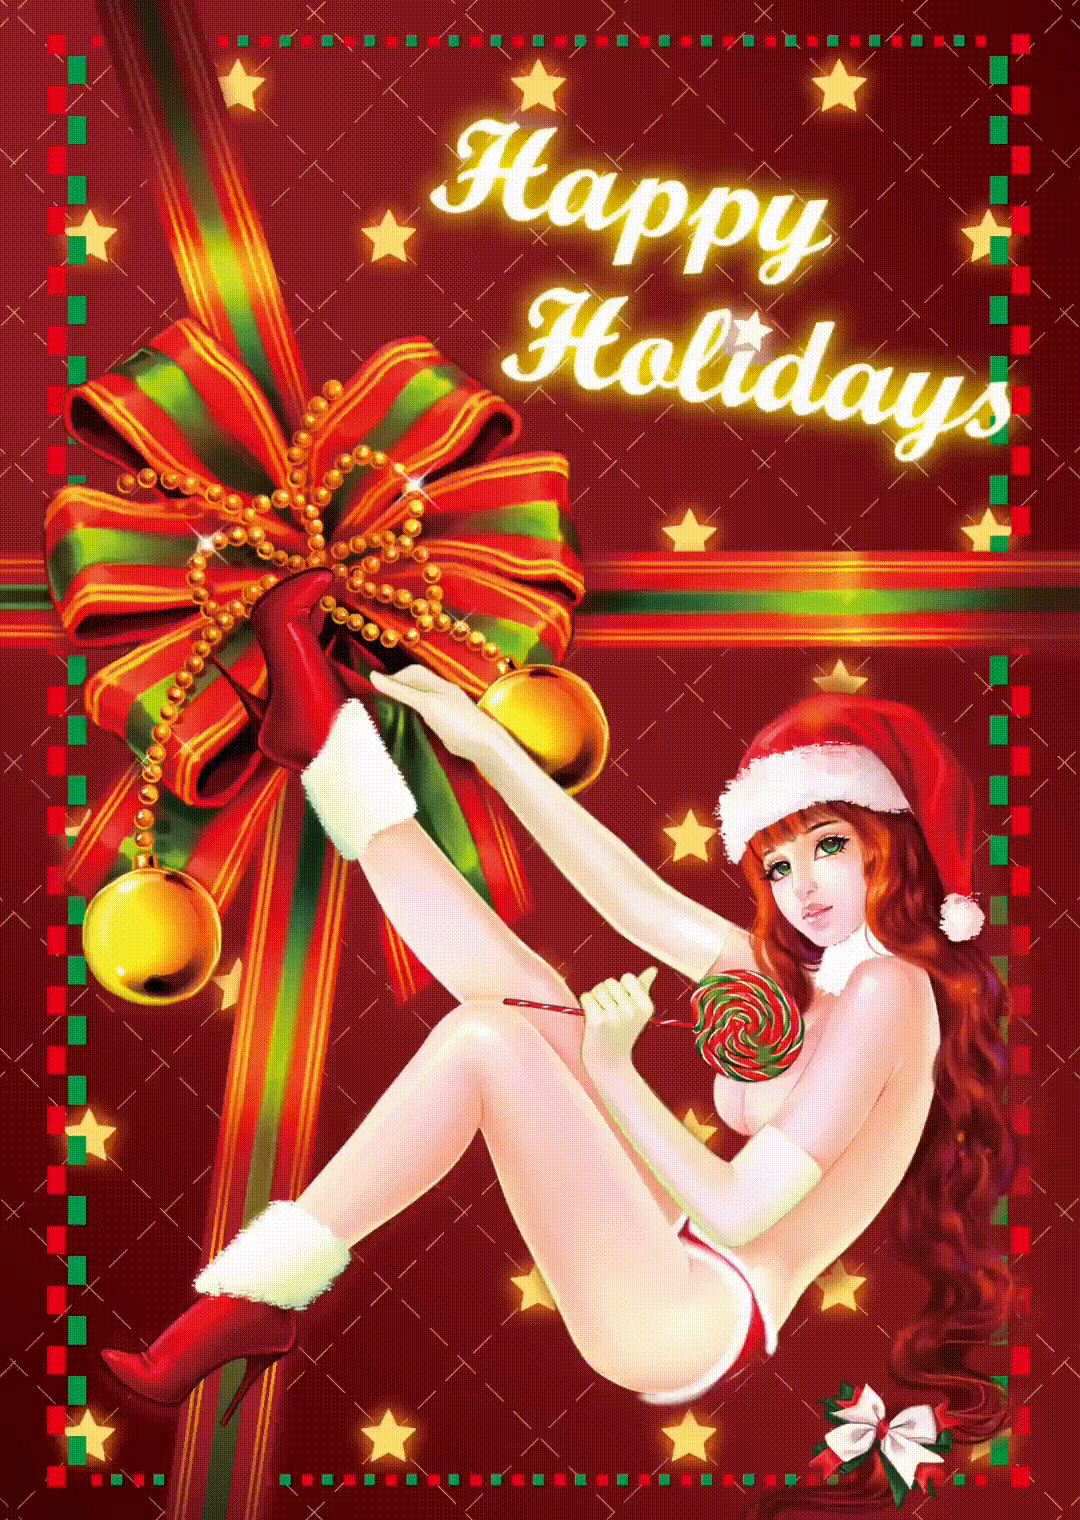 shawlisfantasy_gift_holiday_christmas_xmas_greetings.gif